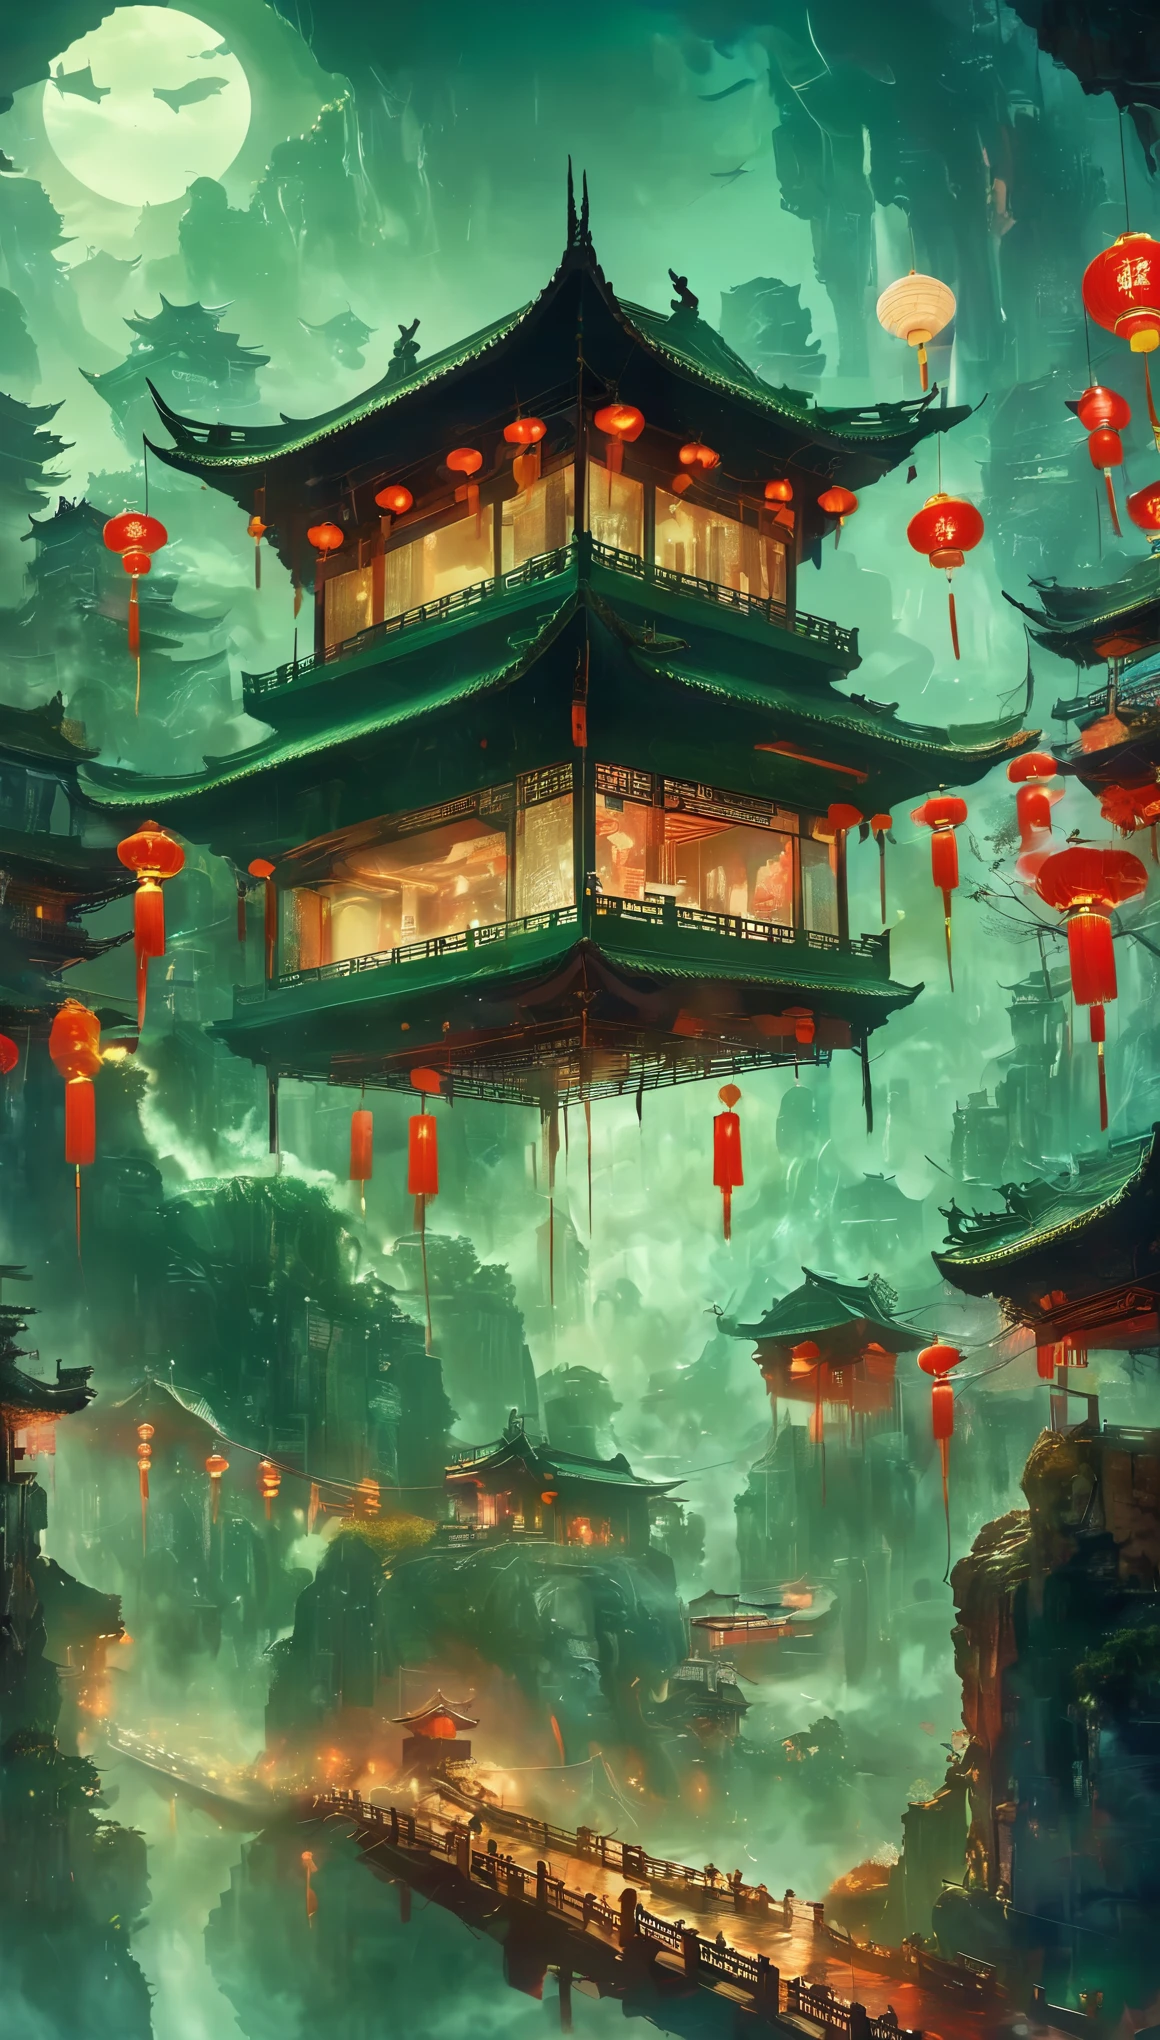 难忘的中国鬼故事, 奇怪的中国建筑, Qixi Festival, 绿鬼汤, 文浦大桥, 湯麵, 护送幽灵, 链, 黑暗阴沉的灯光, 電影, 害怕, 氣氛, 超現實主義, 神秘, 詳細的